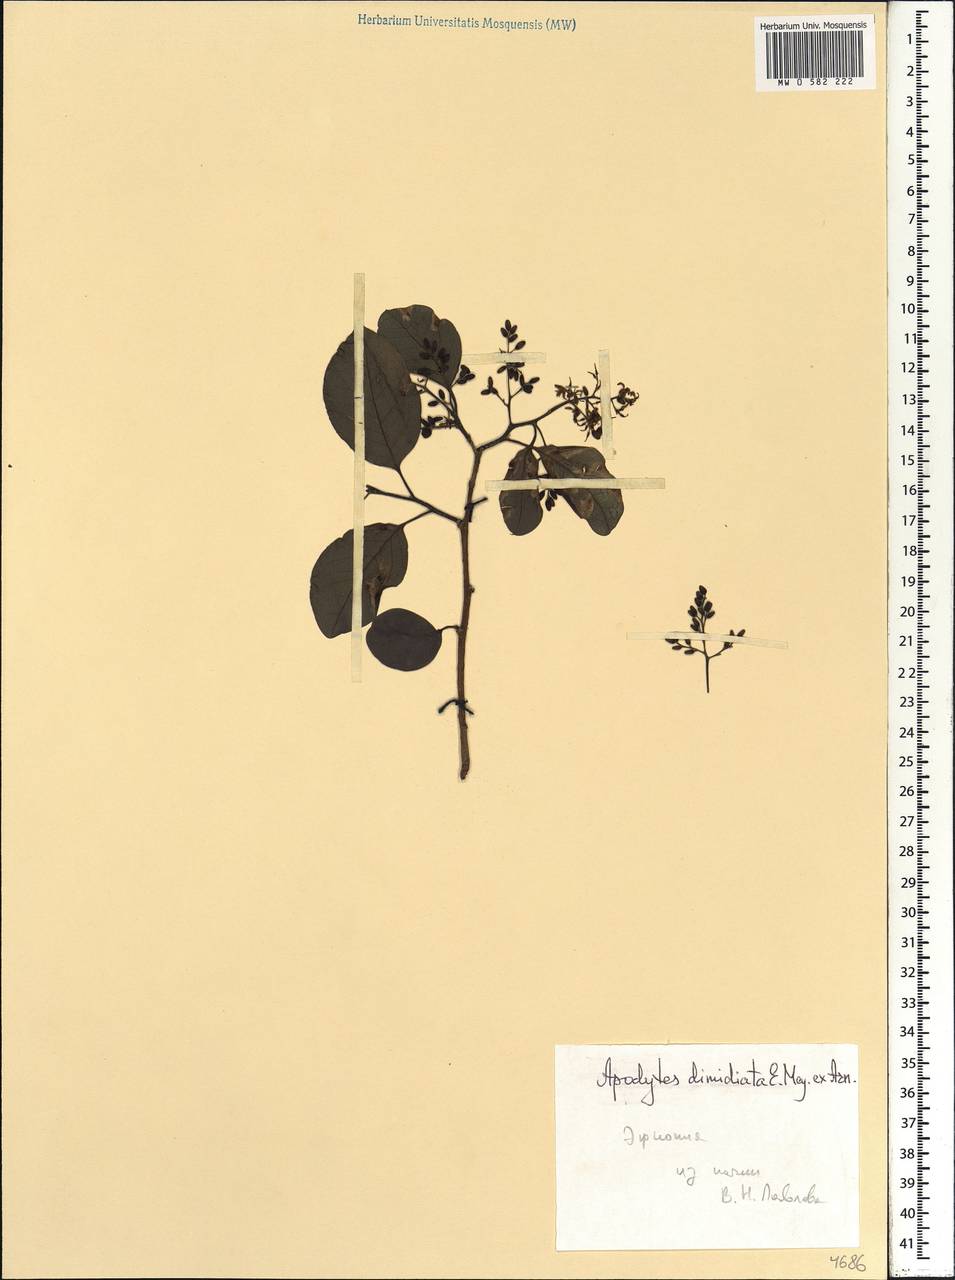 Apodytes dimidiata E. Mey. ex Arn., Africa (AFR) (Ethiopia)